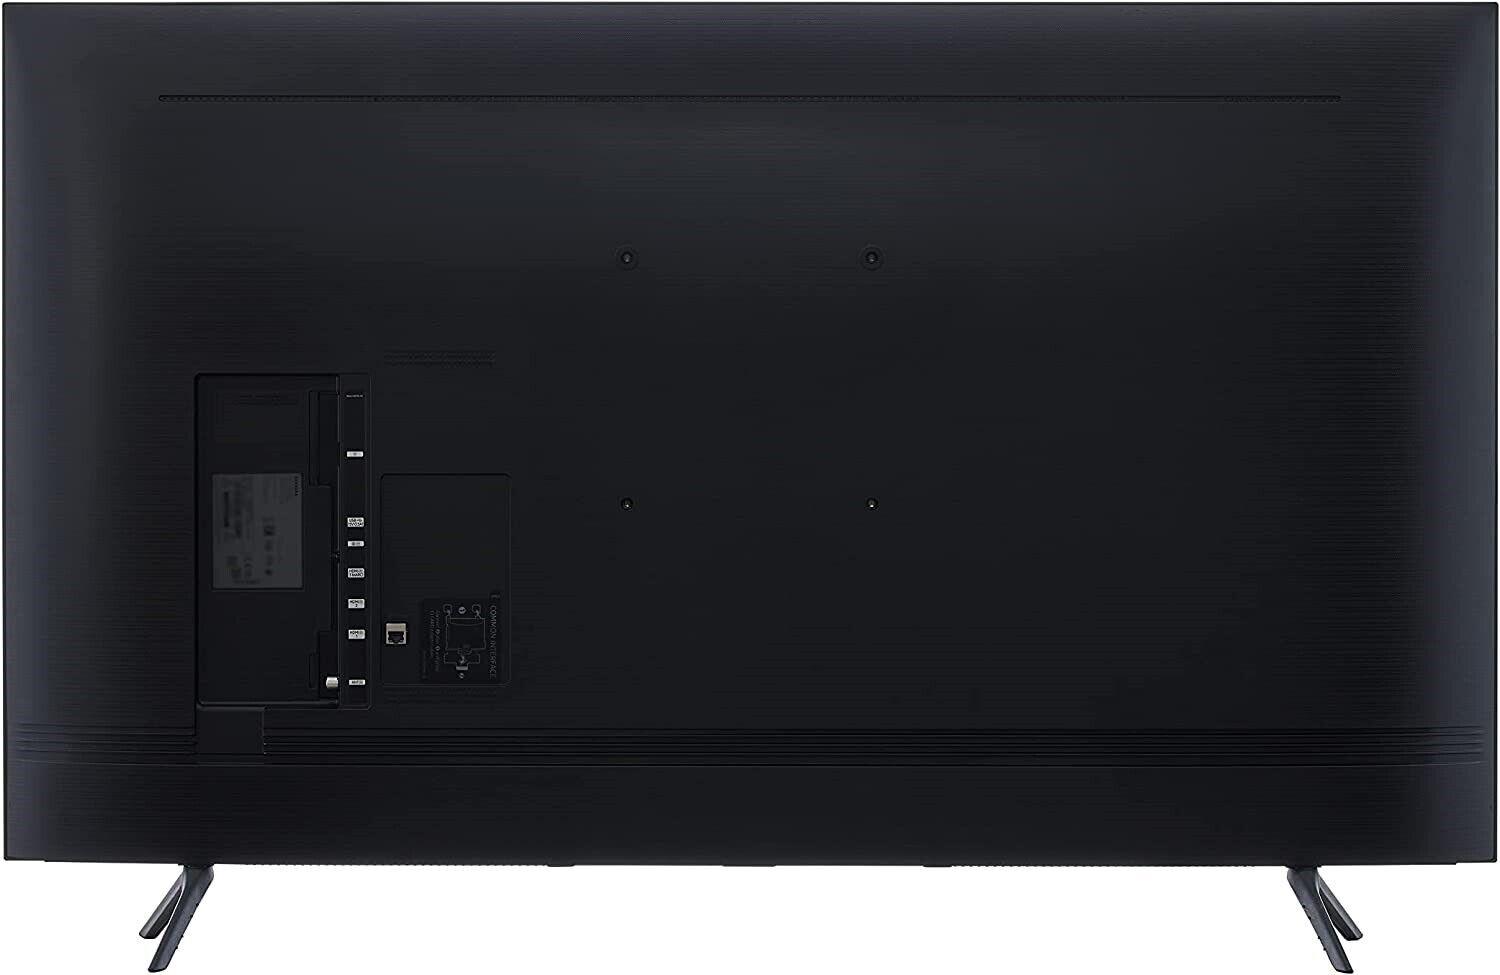 Samsung UE55AU7100K 55" 4K LED LCD Smart TV COLLECTION ONLY U - Smart Clear Vision